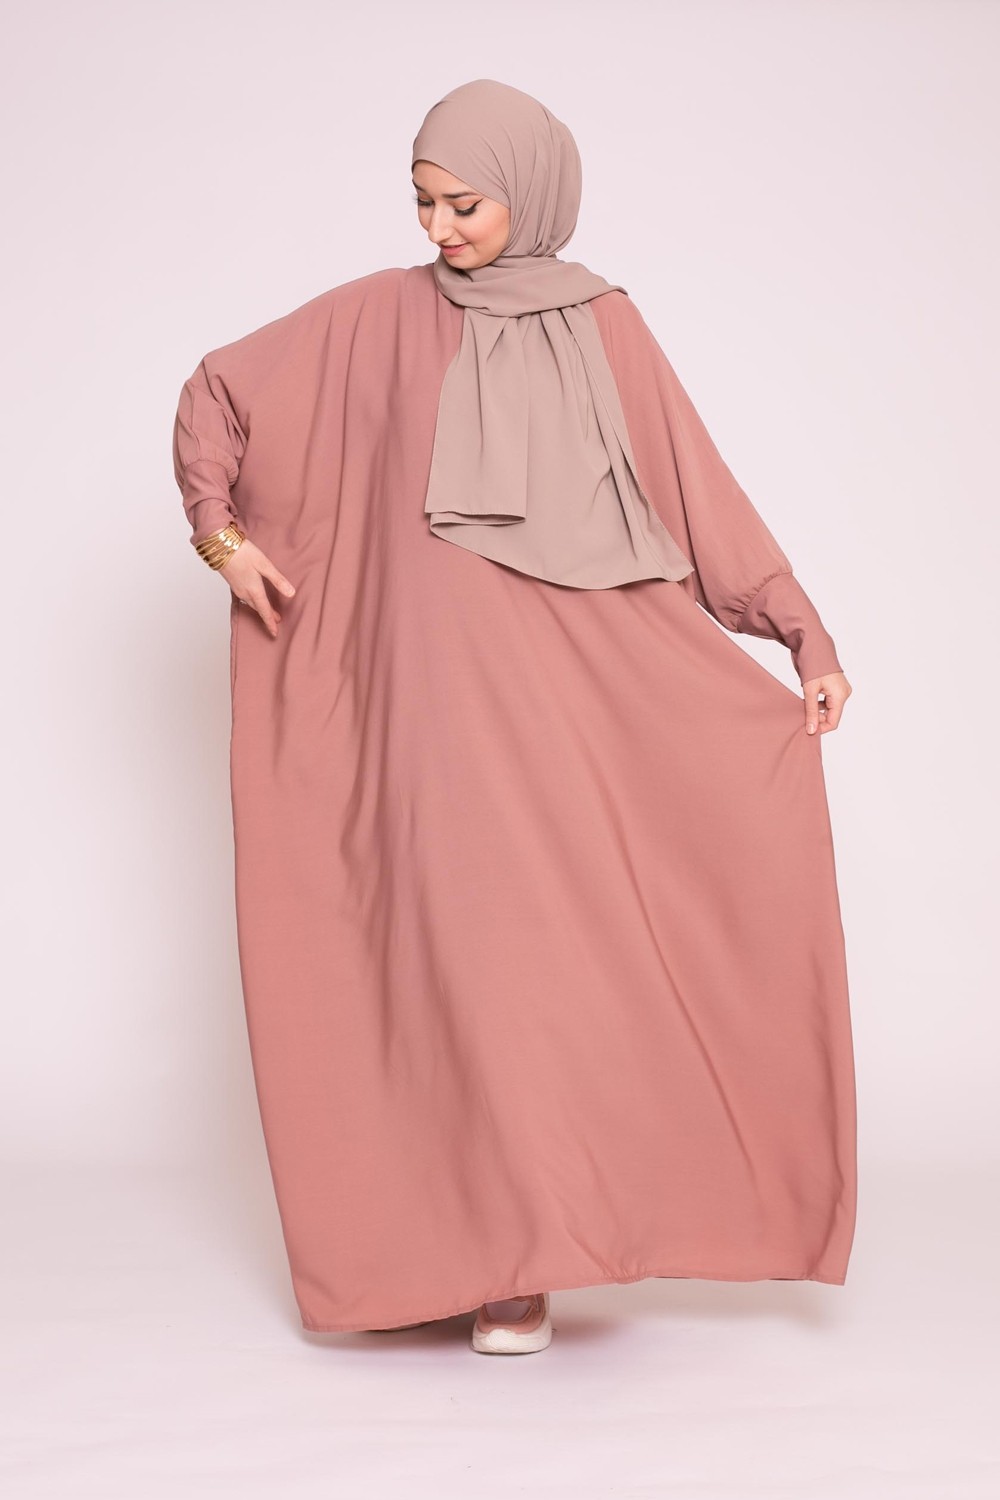 Abaya saoudienne vieux rose foncé boutique vêtement pour femme musulmane pas cher